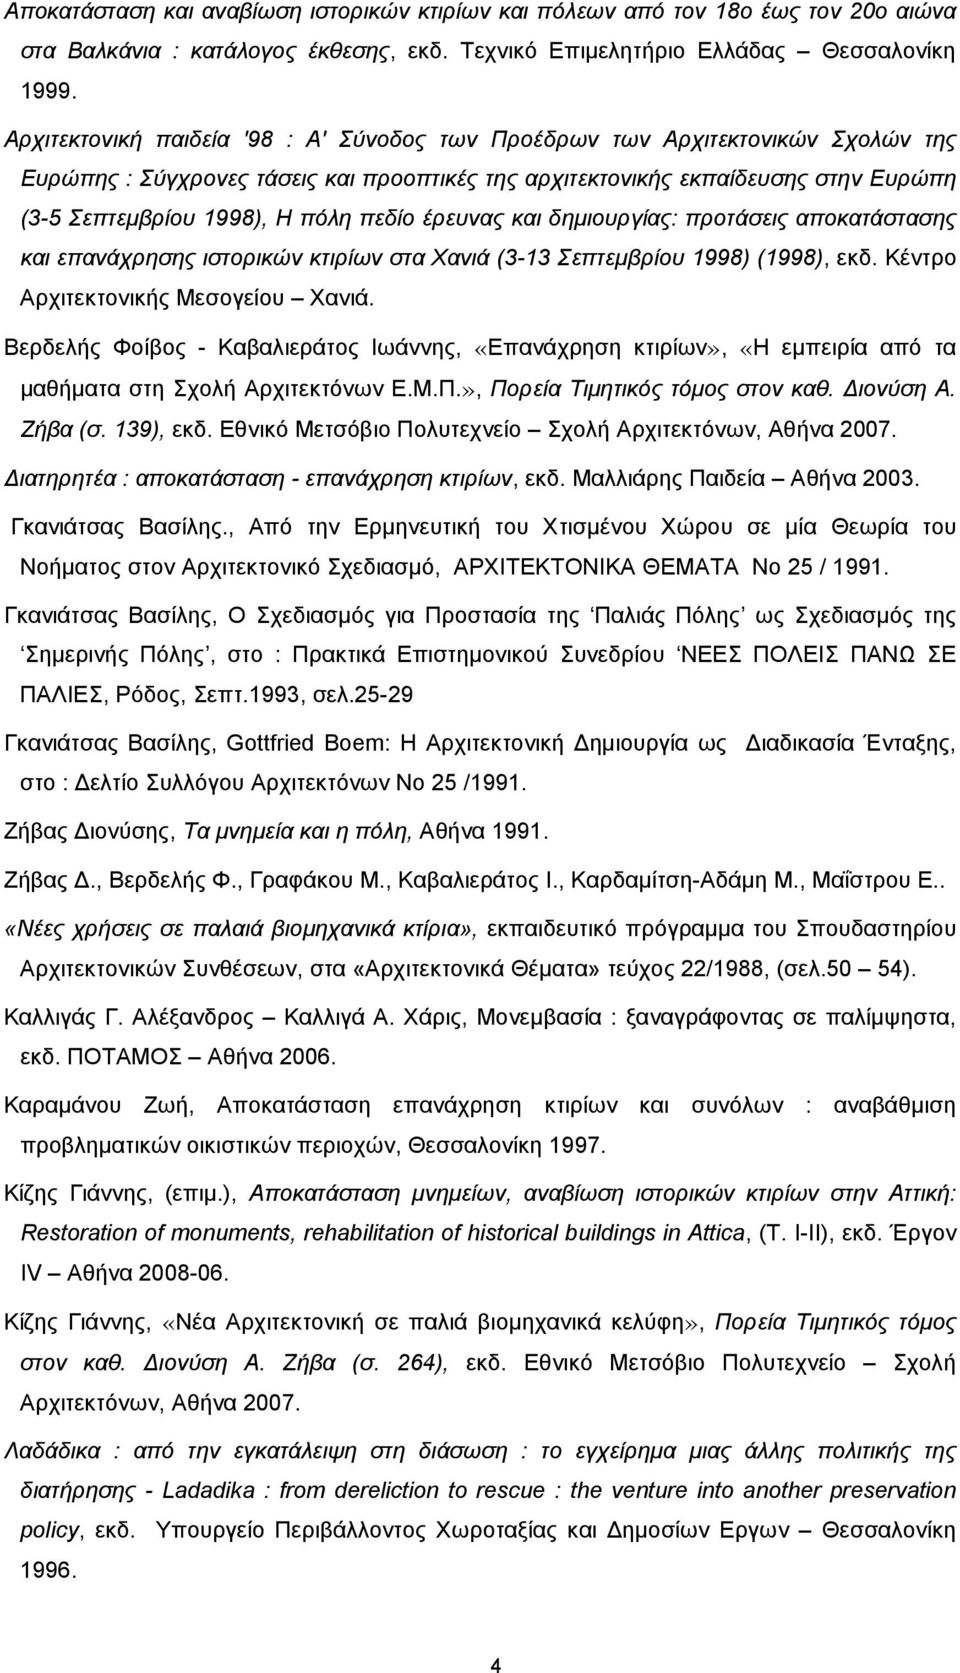 πεδίο έρευνας και δηµιουργίας: προτάσεις αποκατάστασης και επανάχρησης ιστορικών κτιρίων στα Χανιά (3-13 Σεπτεµβρίου 1998) (1998), εκδ. Κέντρο Αρχιτεκτονικής Μεσογείου Χανιά.